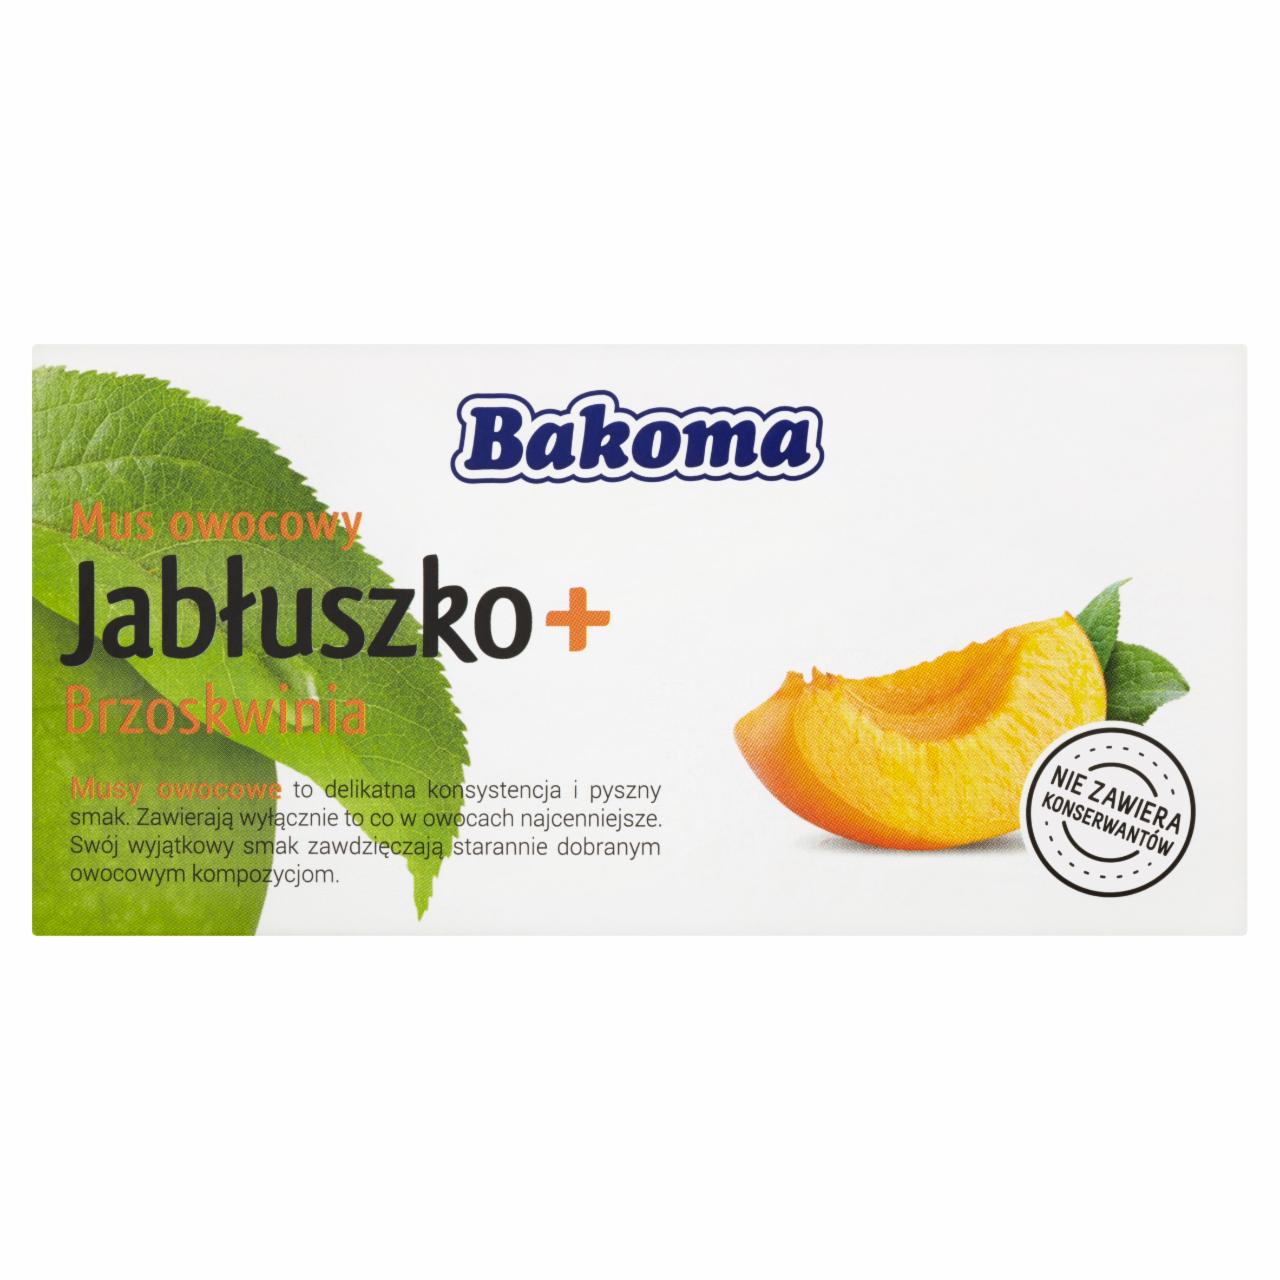 Zdjęcia - Bakoma Mus owocowy Jabłuszko + Brzoskwinia 200 g (2 sztuki)